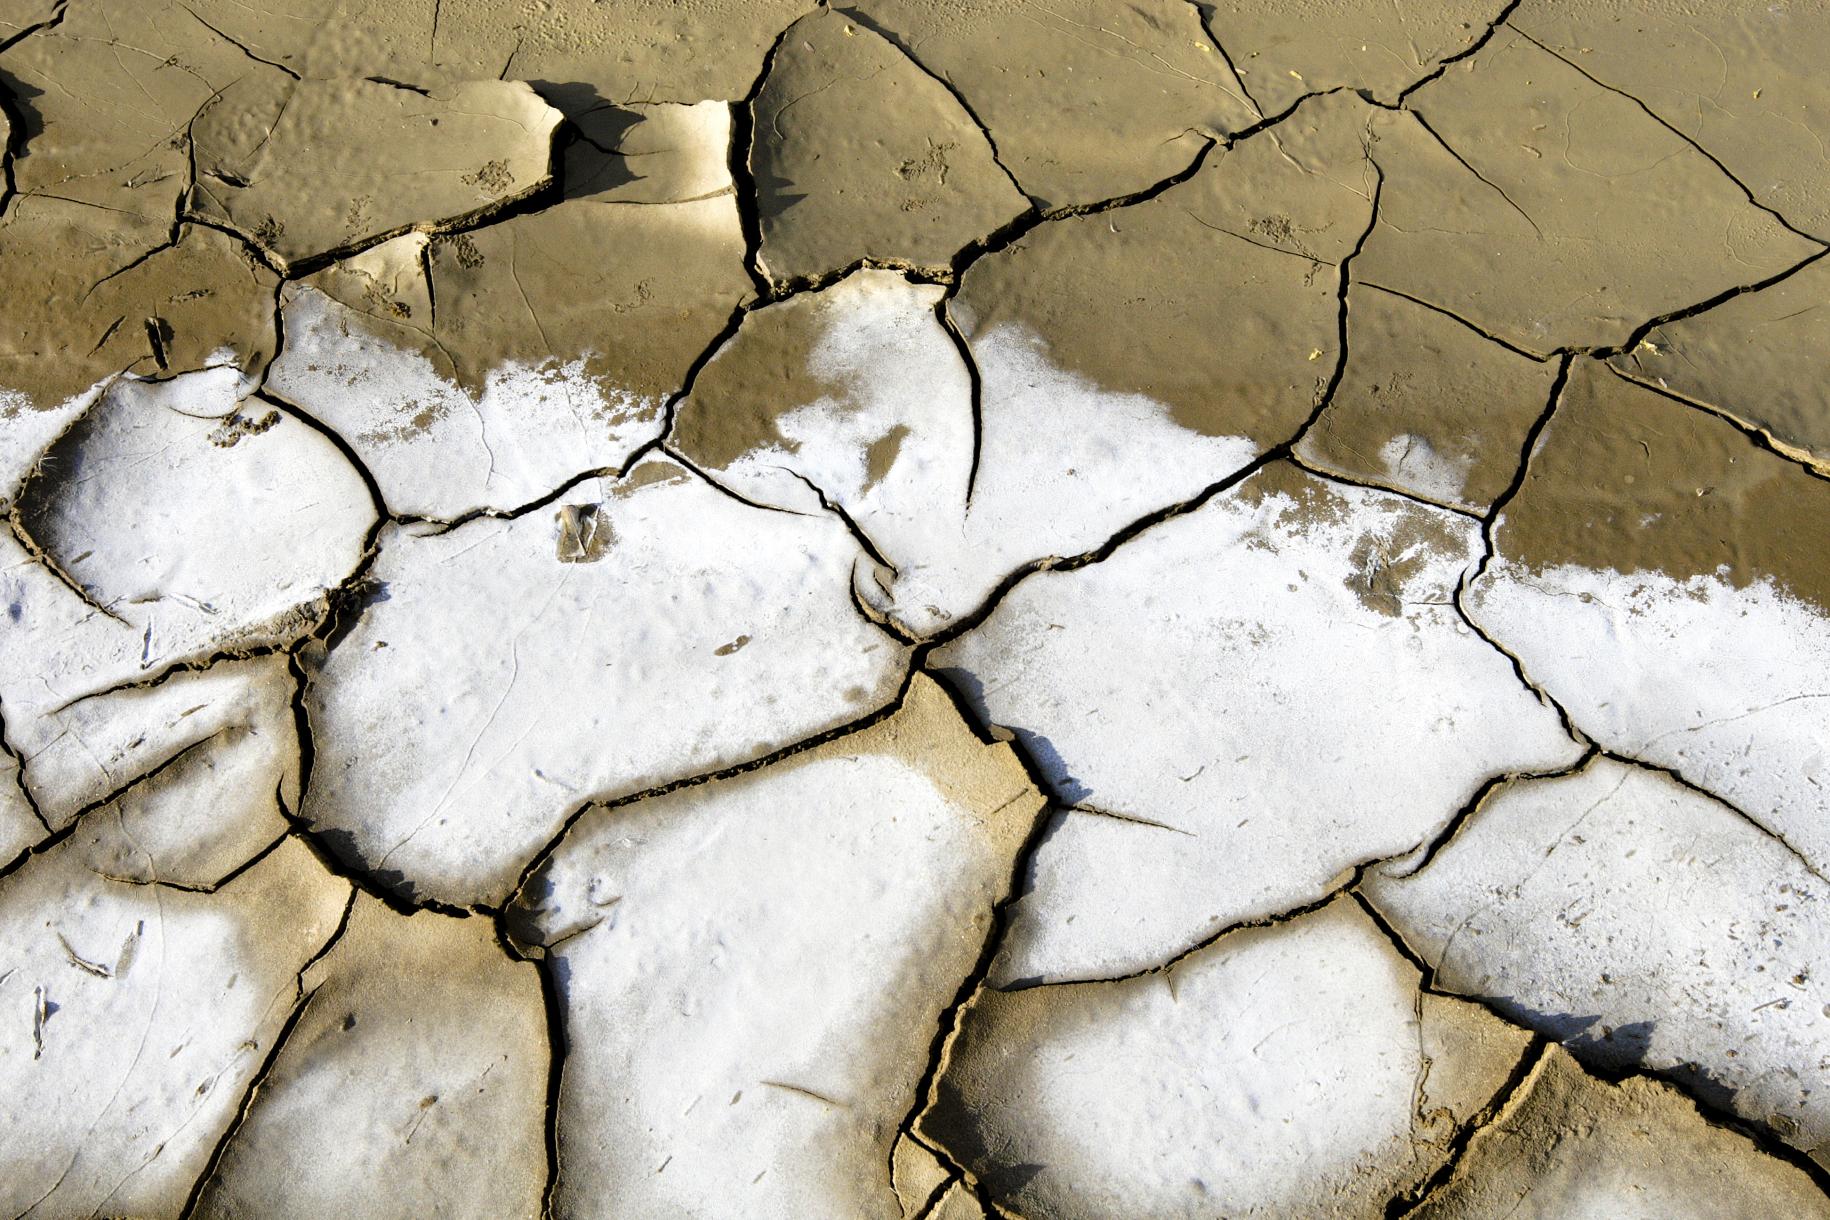 Suelo seco y quebradizo. La imagen muestra la devastación que la sequía y la escasez de agua pueden provocar en el suelo.